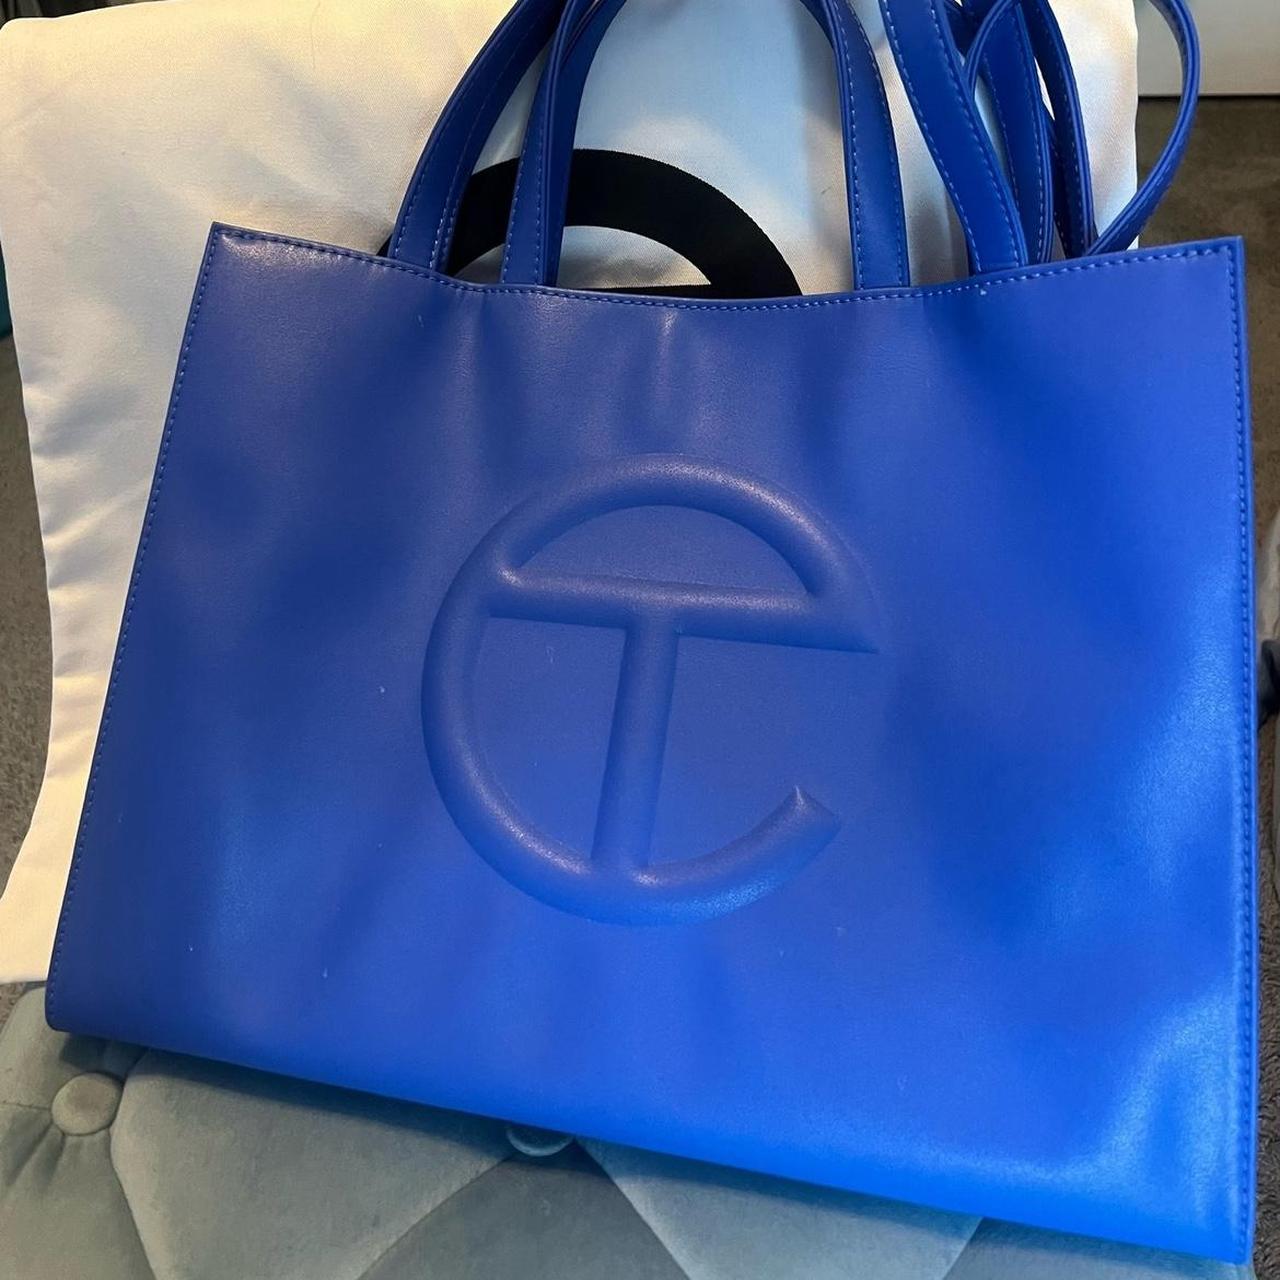 Telfar Women's Blue and Navy Bag | Depop